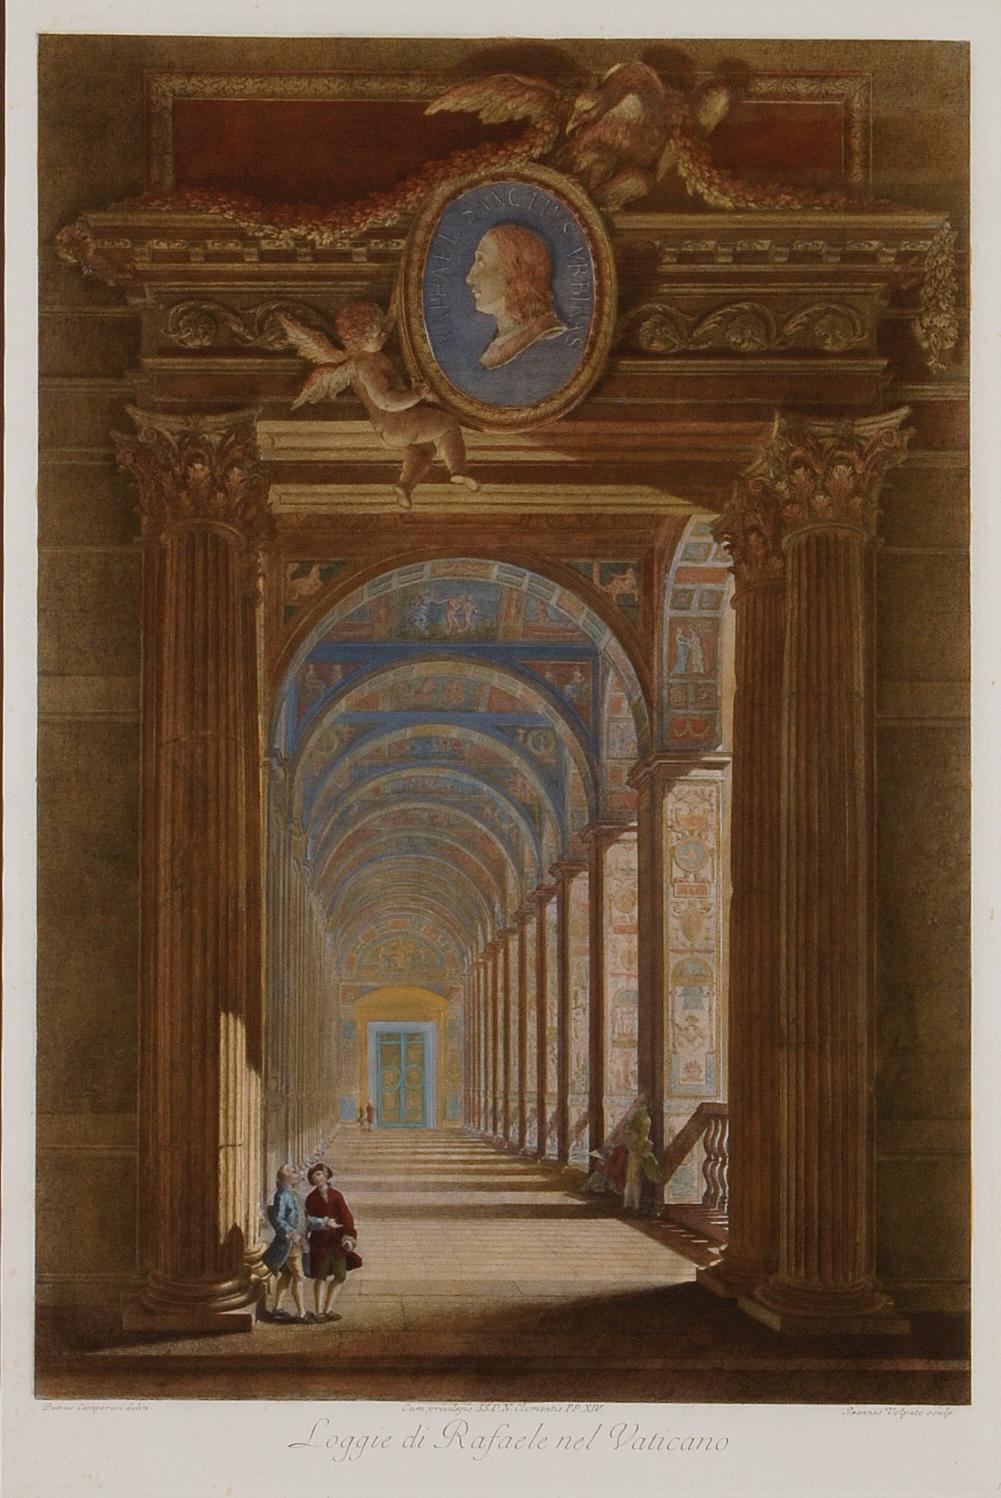  Loggie di Rafaele nel Vaticano: 18th Century Hand-colored Engraving by Volpato - Print by Giovanni Volpato